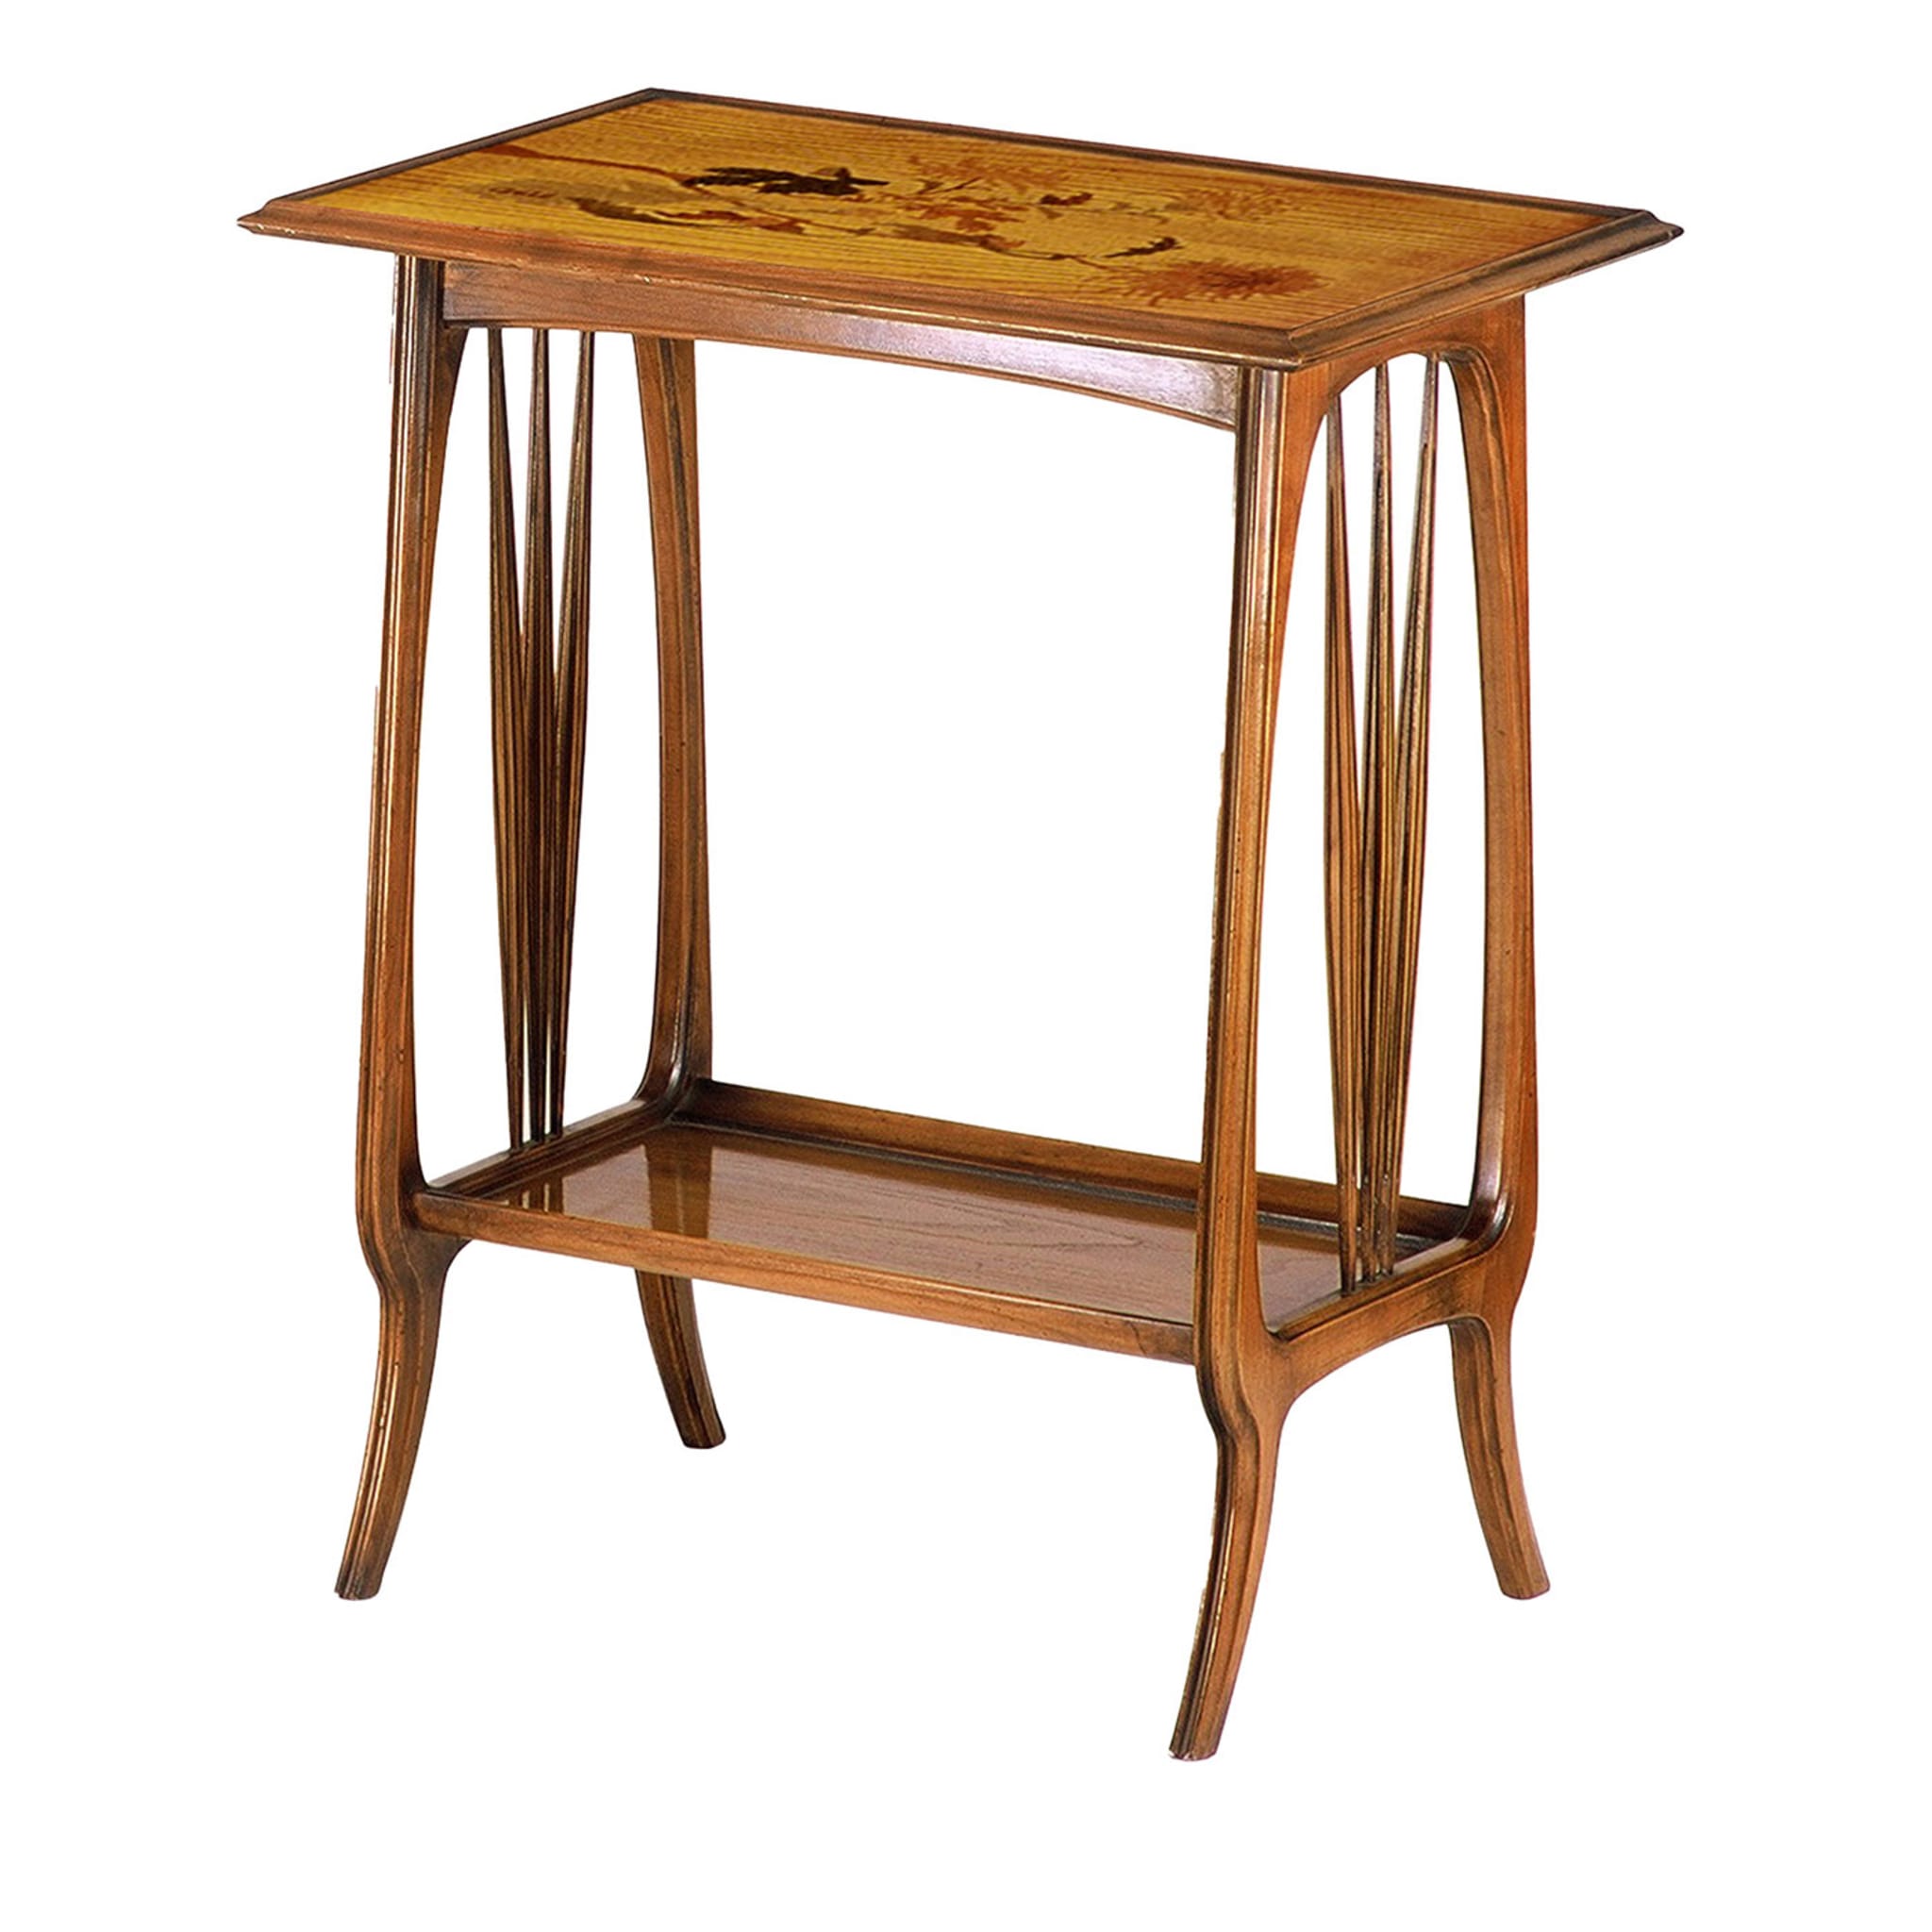 Table d'appoint rectangulaire de style Art nouveau français par Emile Gallè - Vue principale